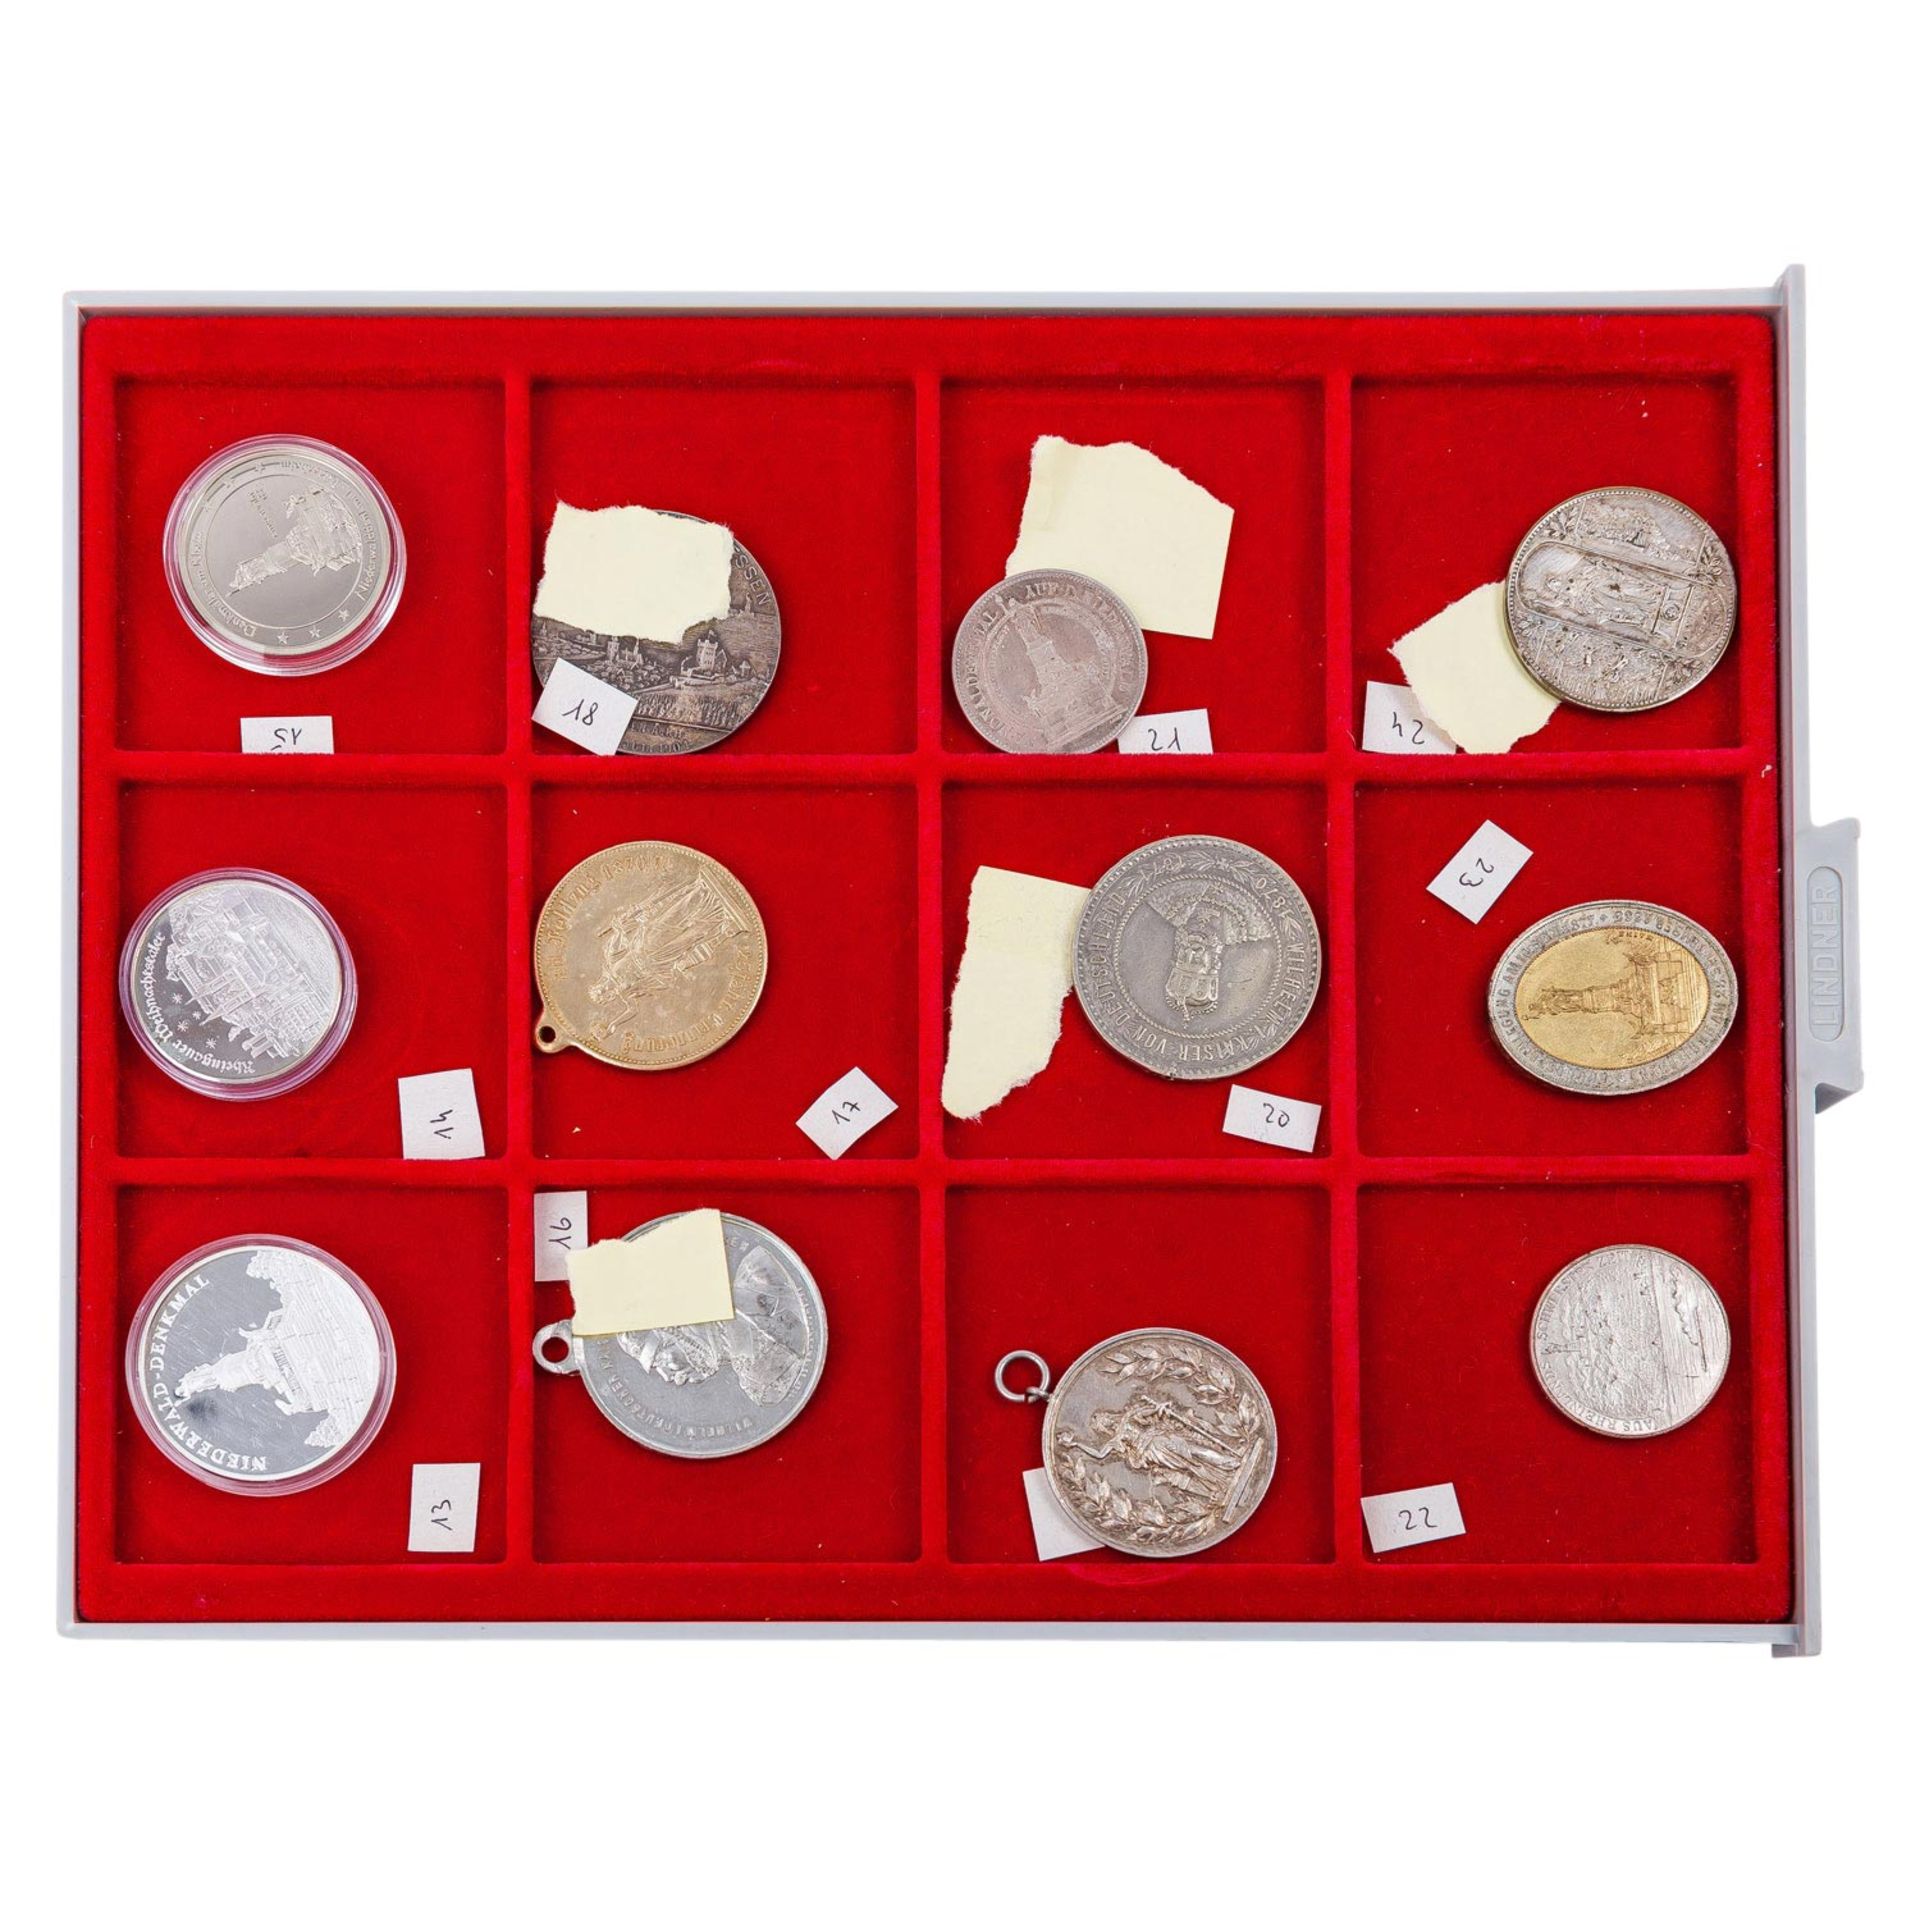 Umfangreiche Sammlung an Plaketten, Medaillen, Medaillons, Abzeichen etc. mit dem nationalen Niederw - Bild 4 aus 9